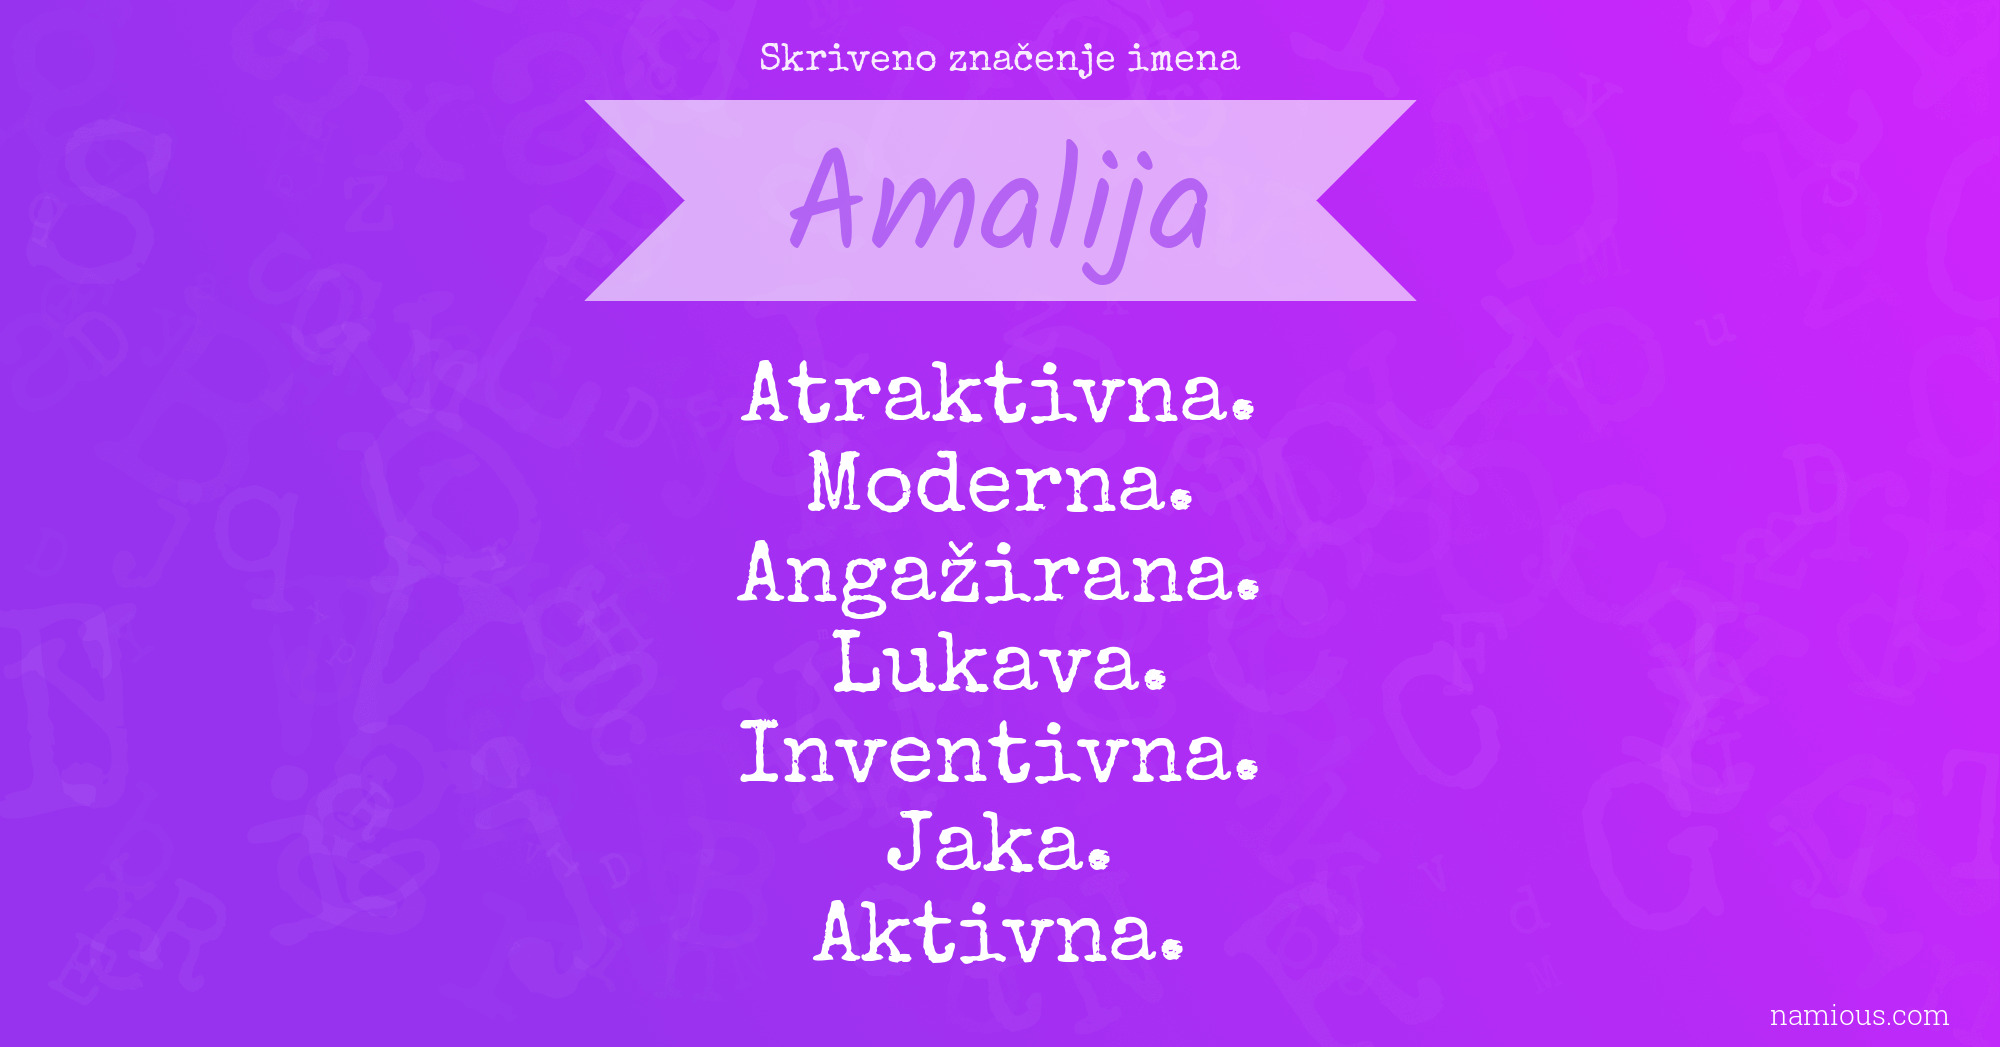 Skriveno značenje imena Amalija